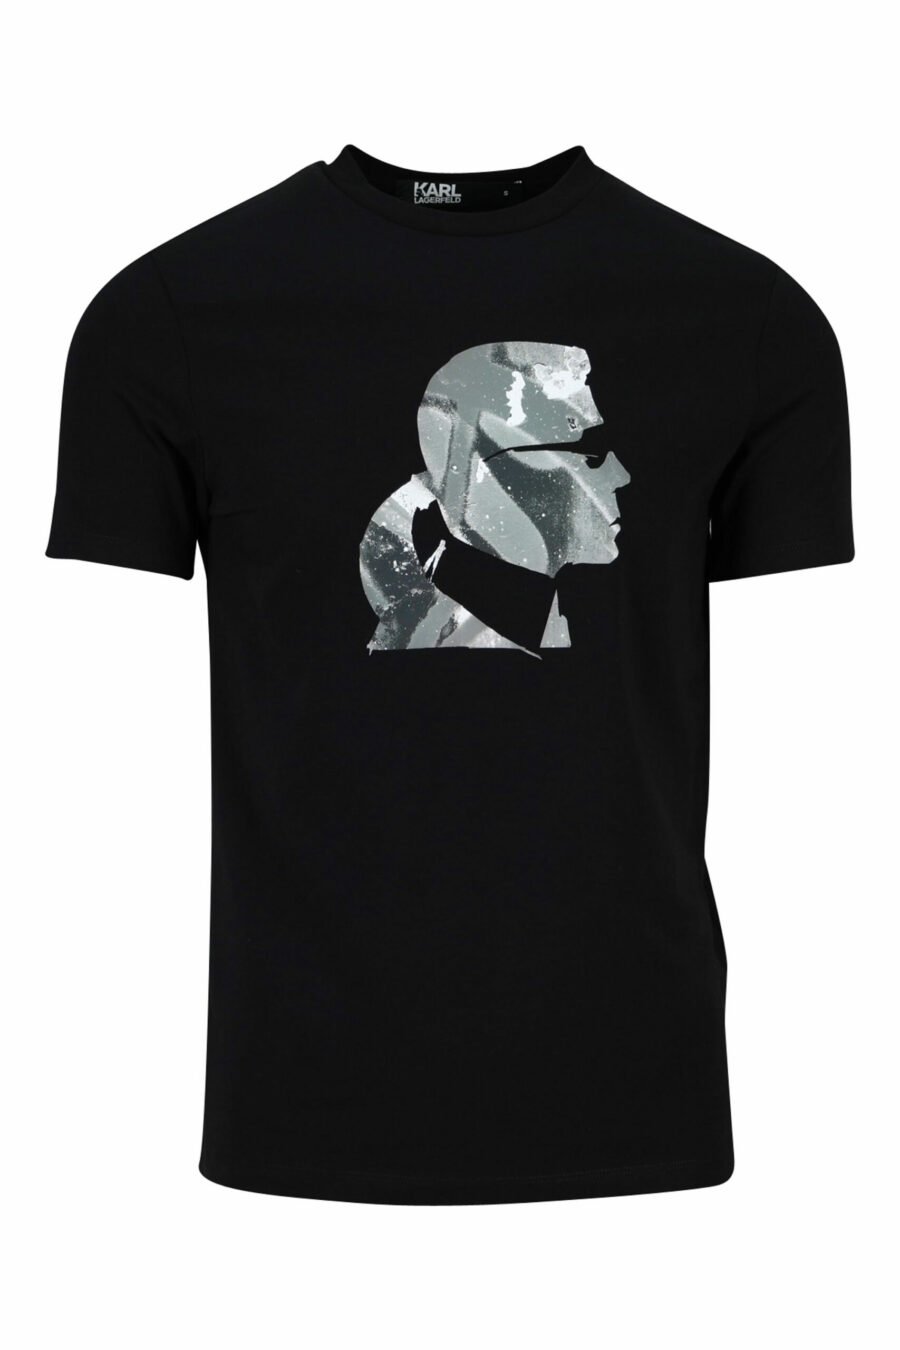 T-shirt noir avec profil de camouflage "karl" - 4062226401906